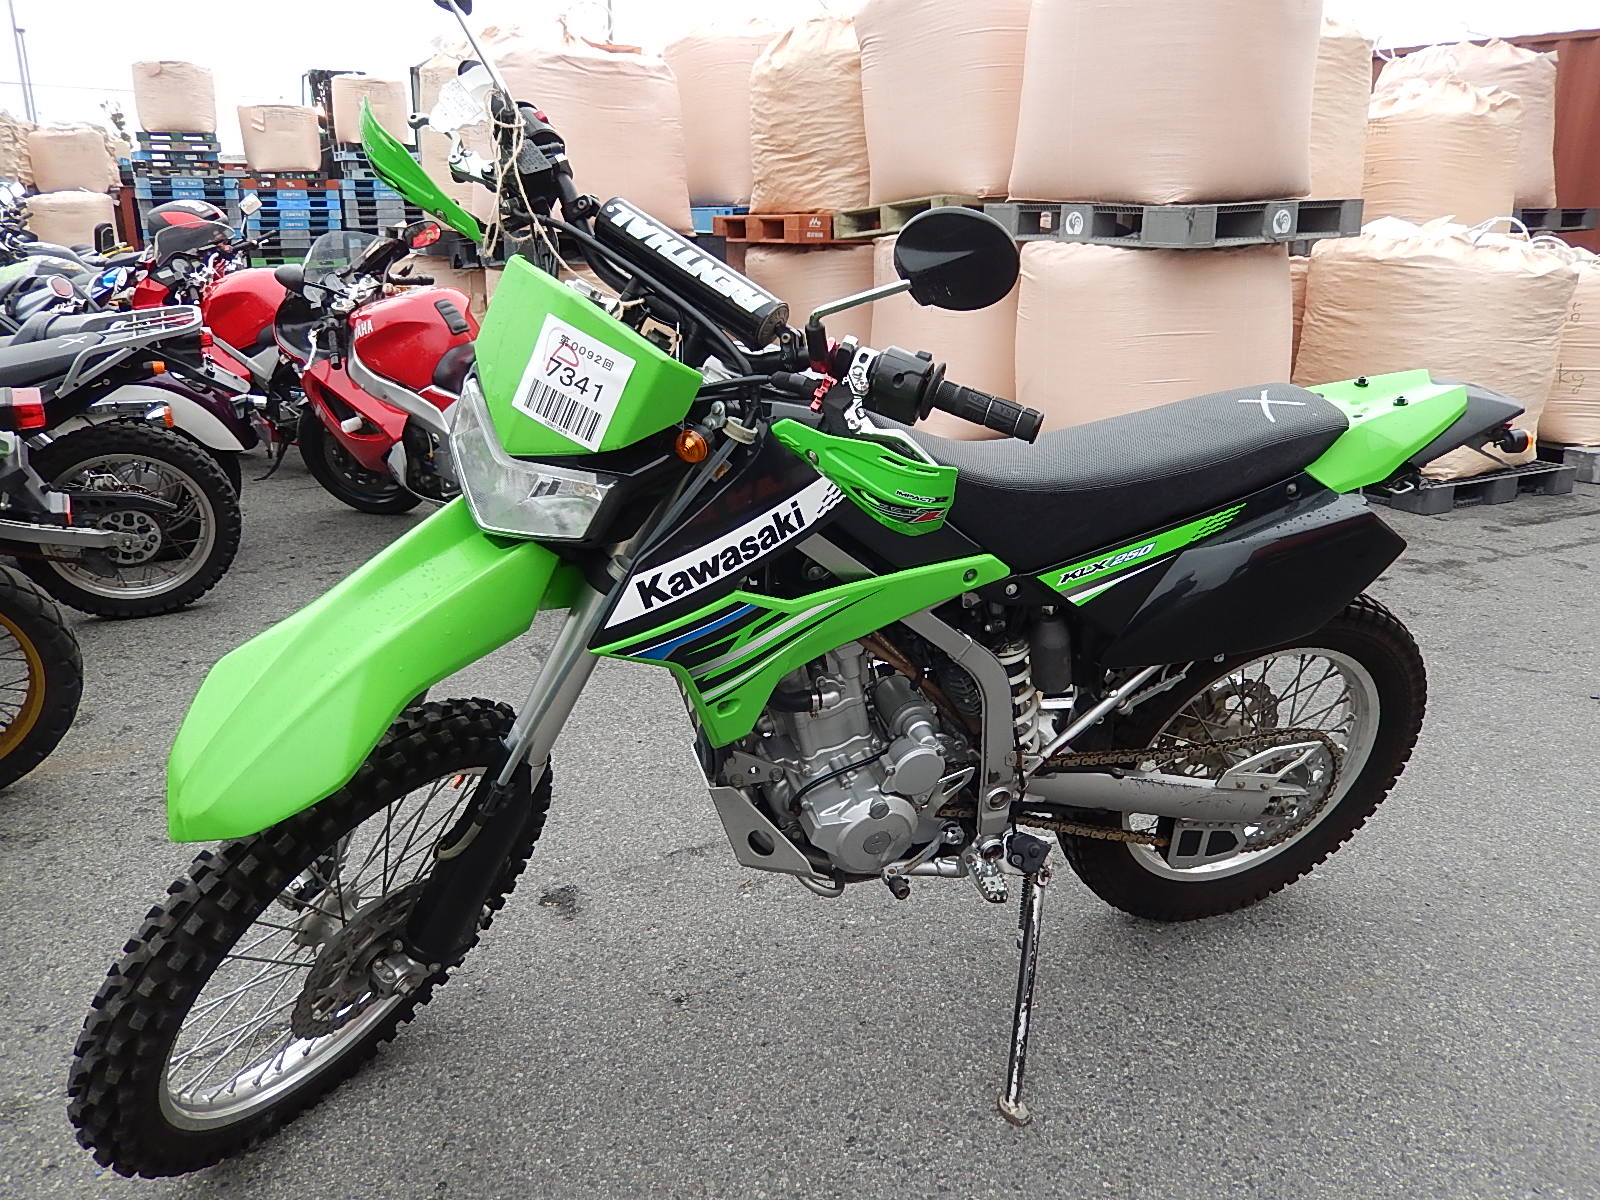 Обзор мотоцикла kawasaki klx 250 - технические характеристики и отзывы владельцев